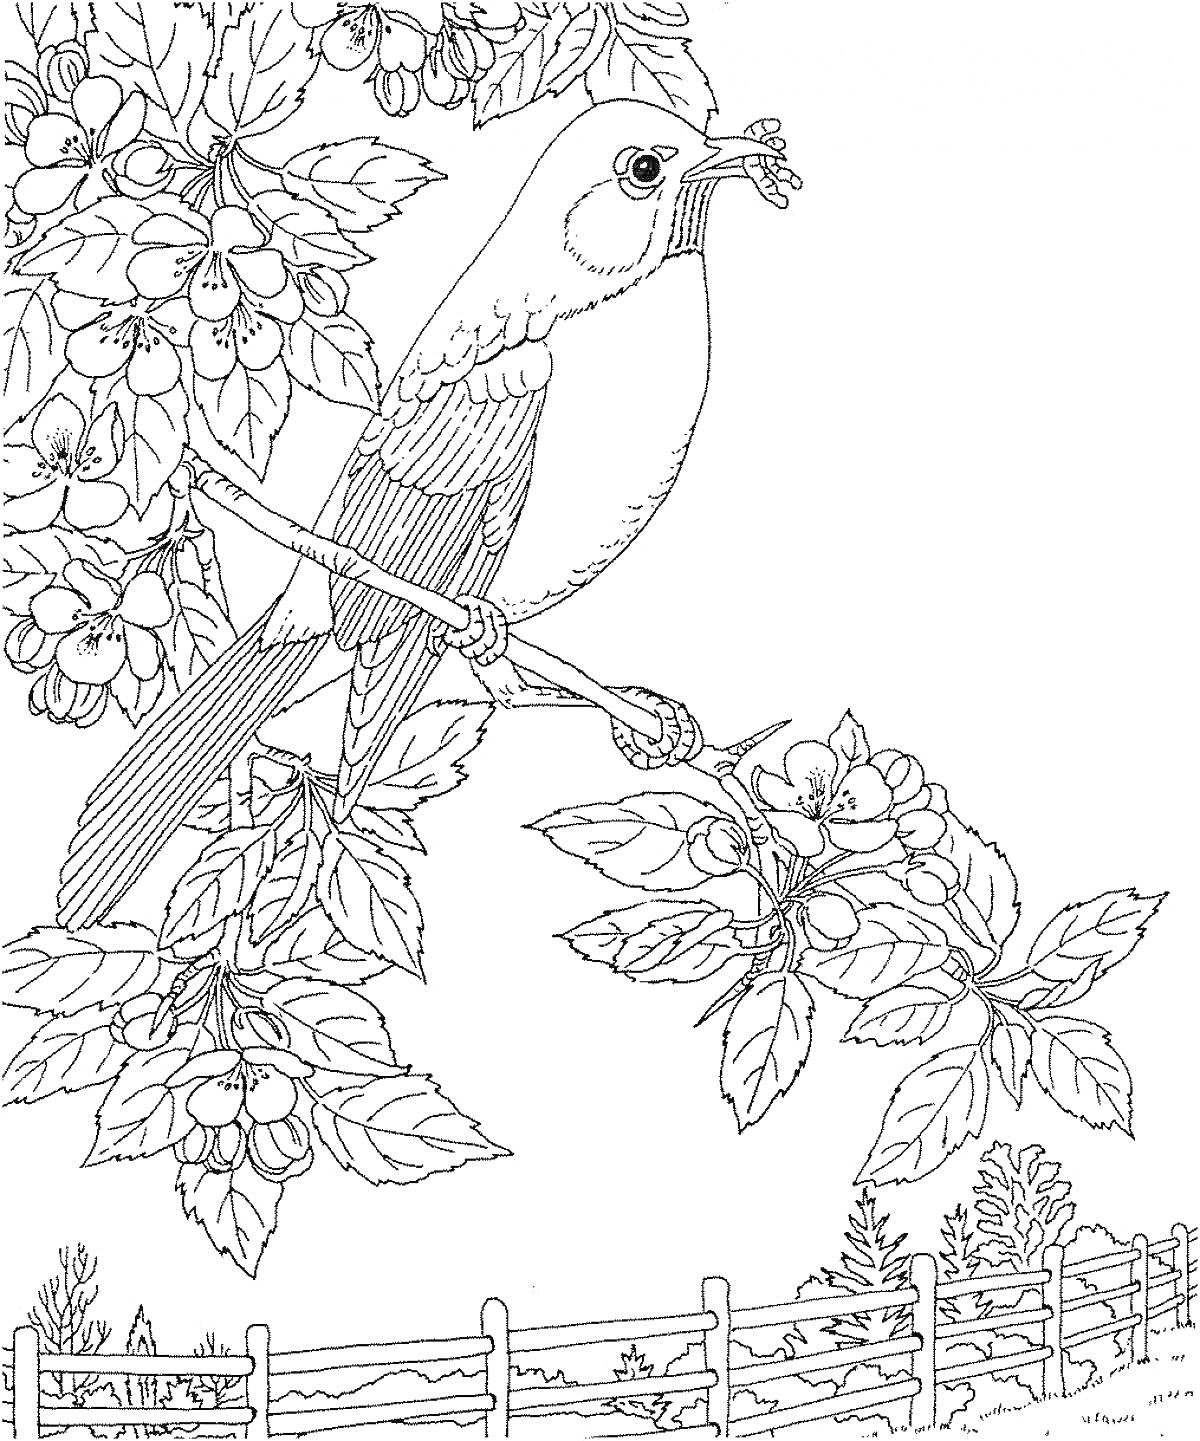 Птица с ягодами в клюве на ветке дерева с ягодами, забор и деревья на заднем плане